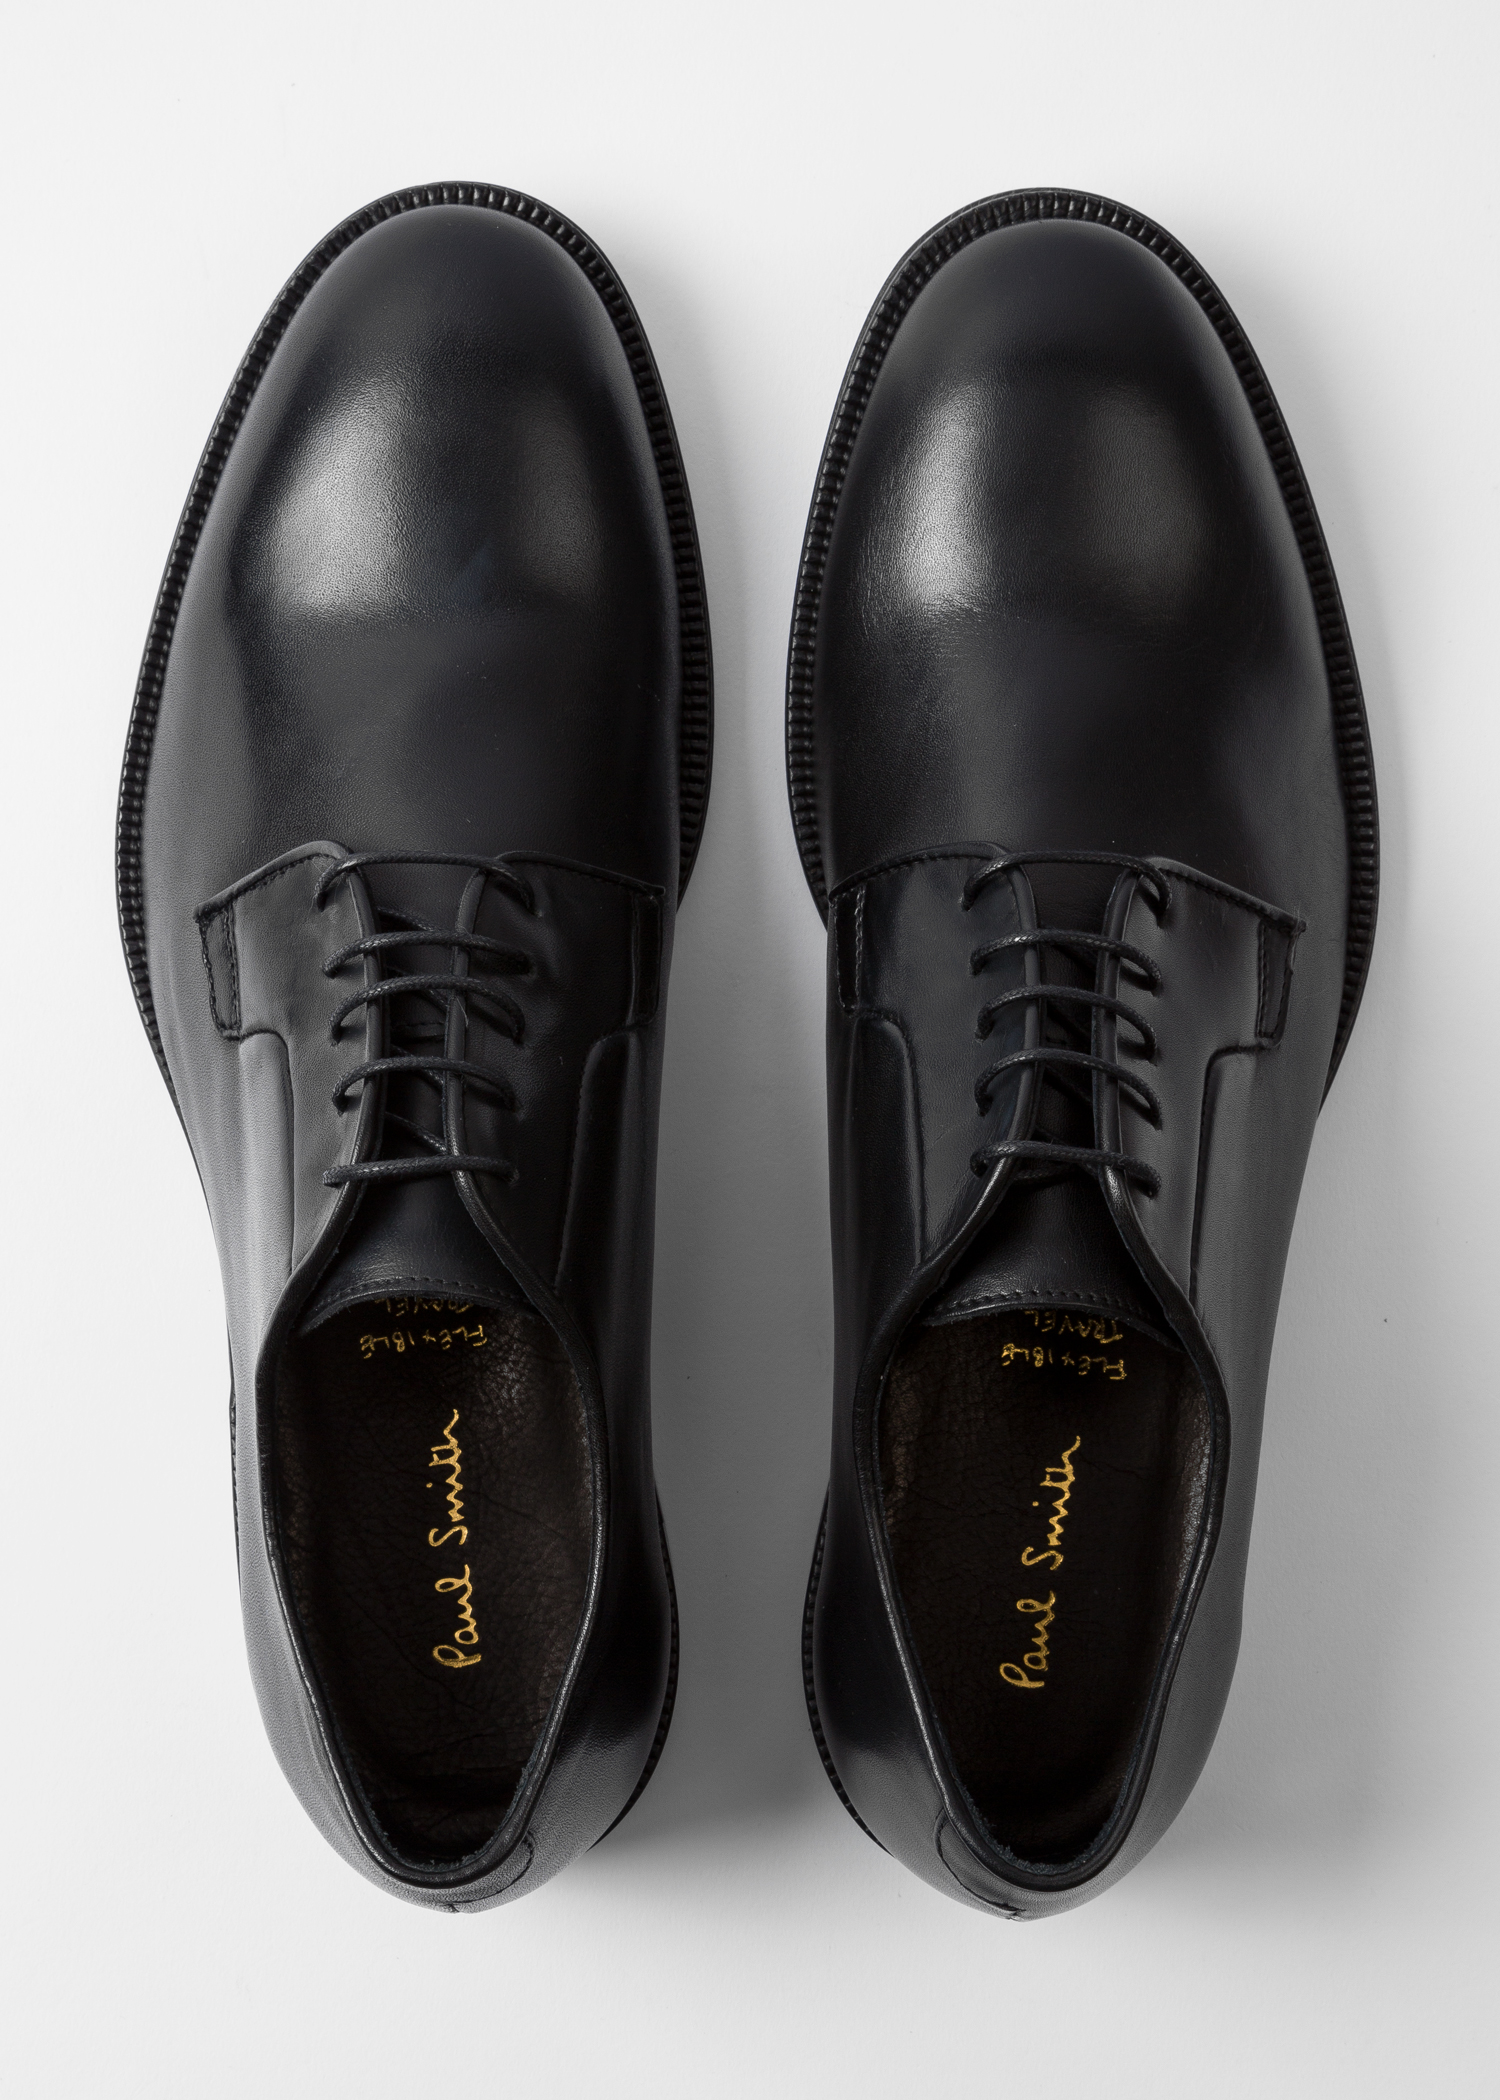 verwerken selecteer tijdschrift Men's Black Leather 'Chester' Flexible Travel Shoes